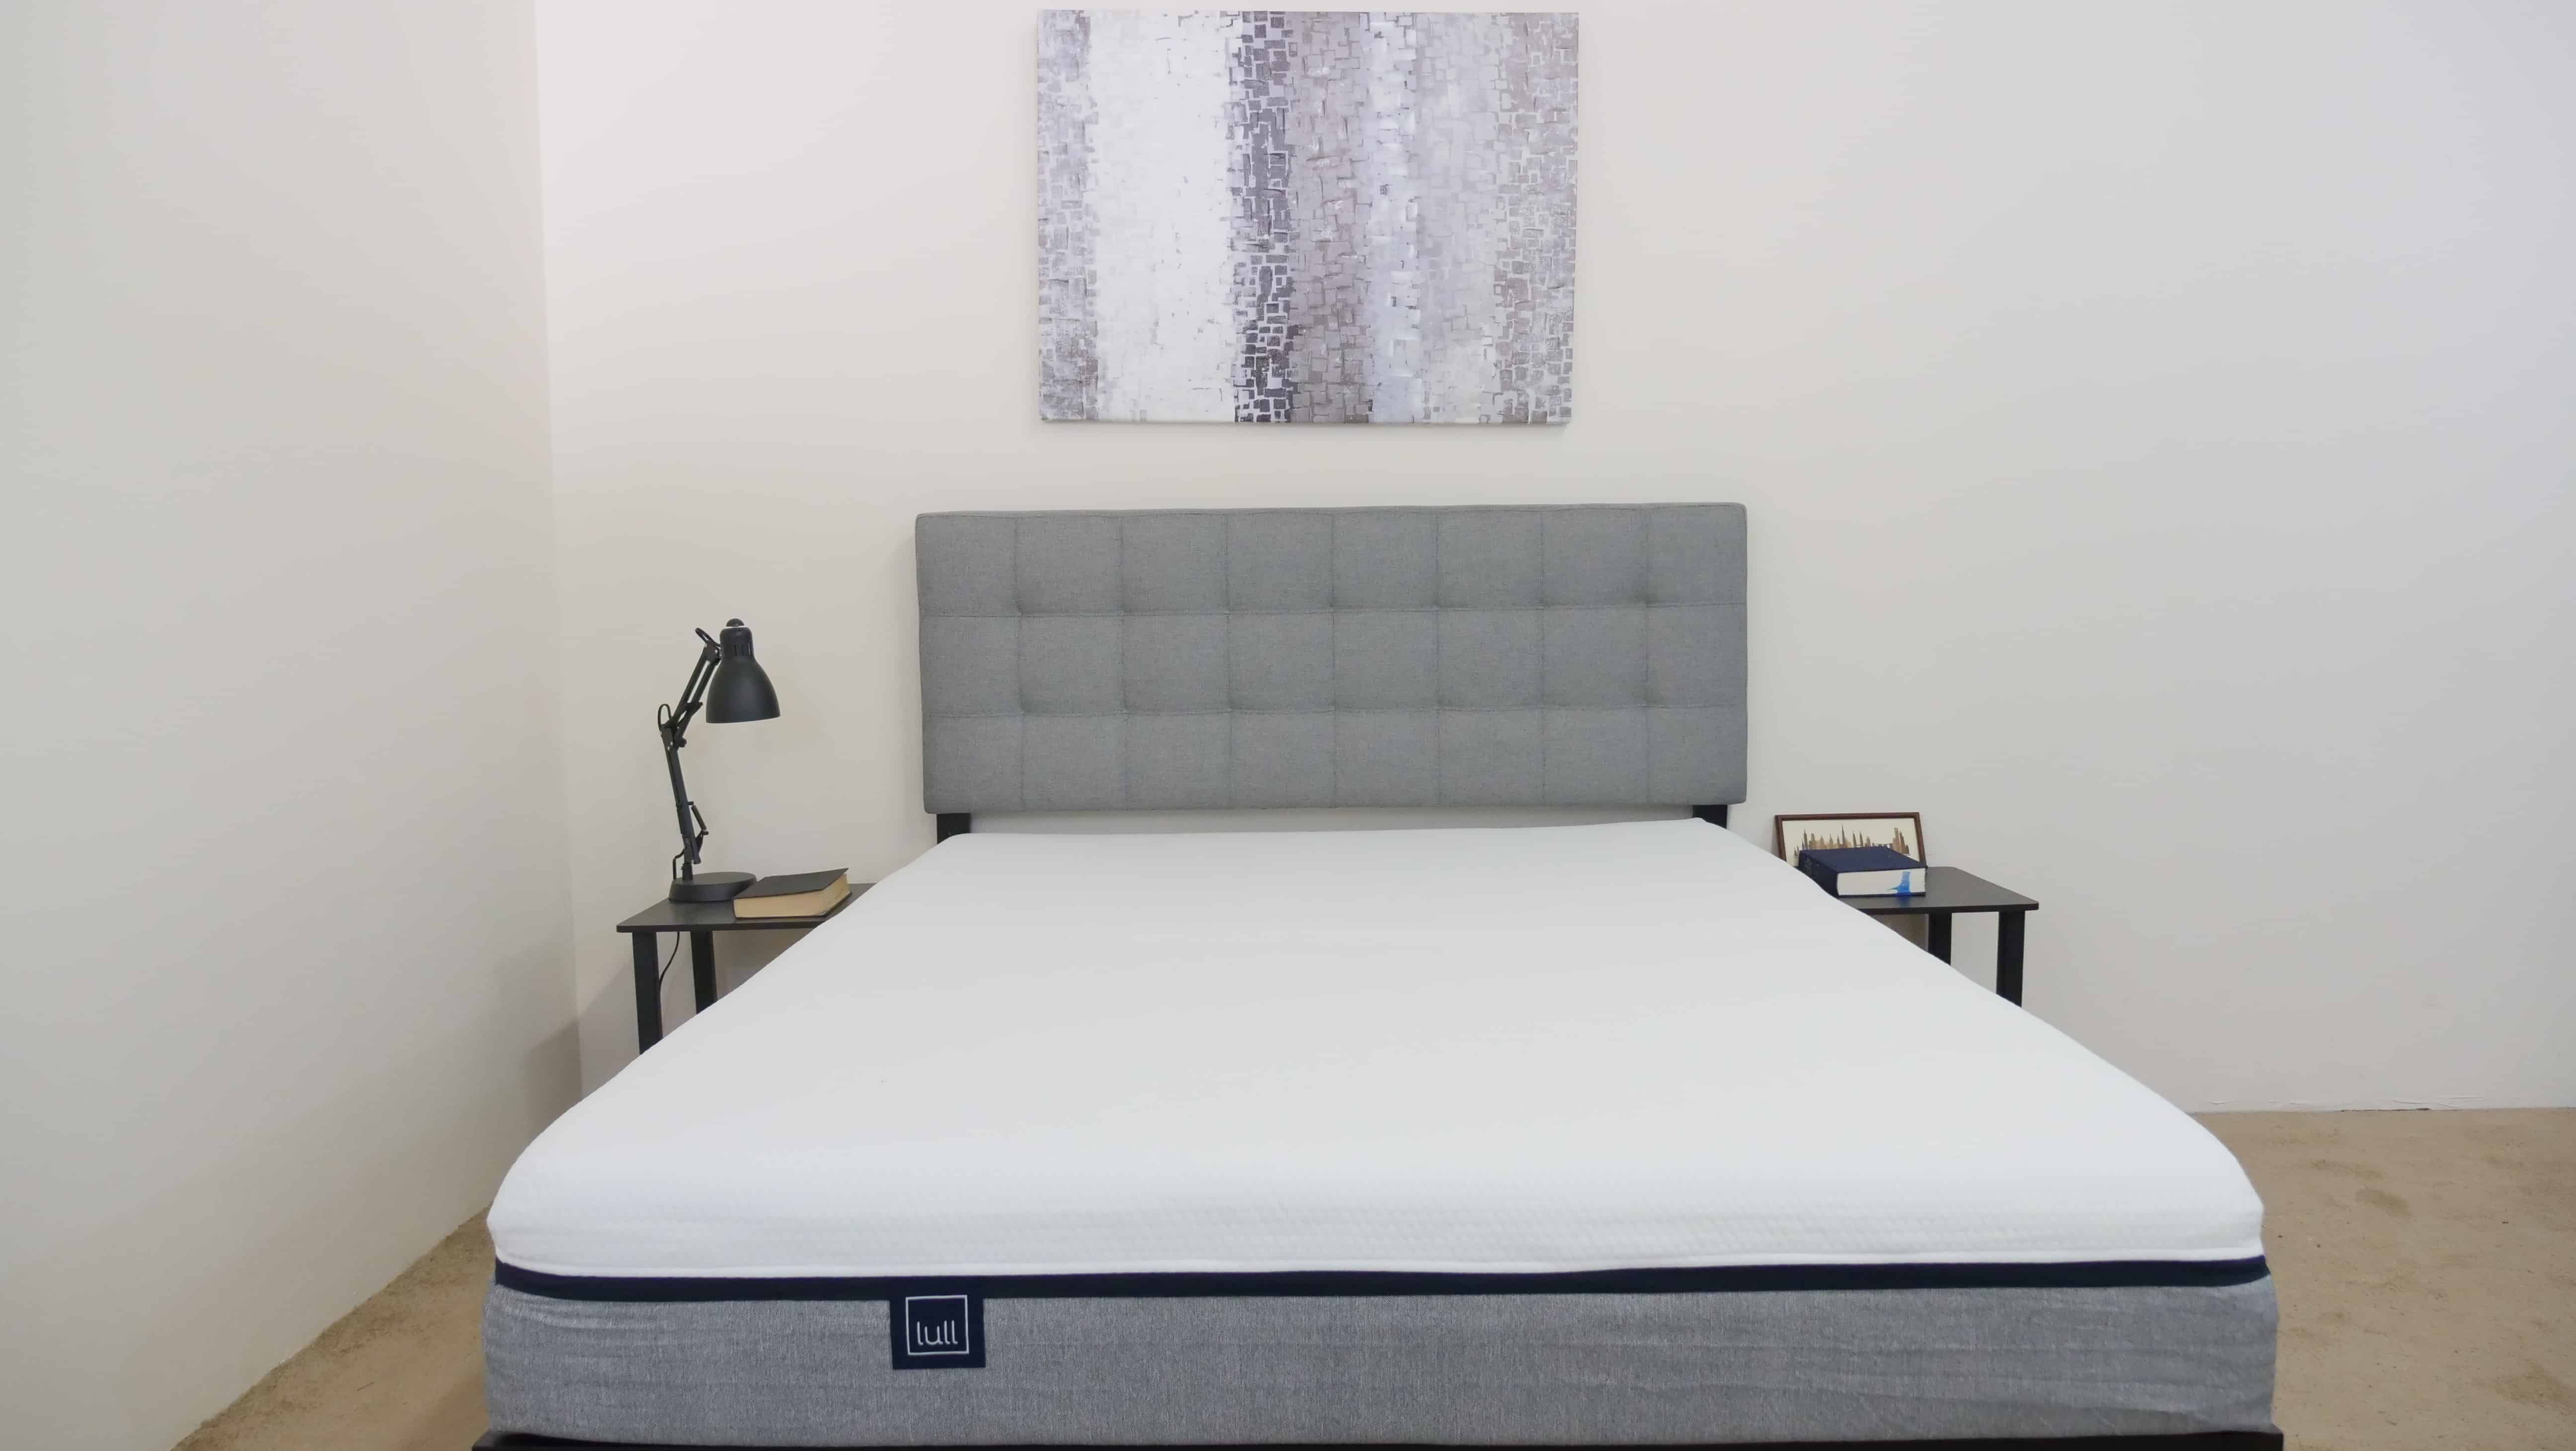 lull mattress sleep expert